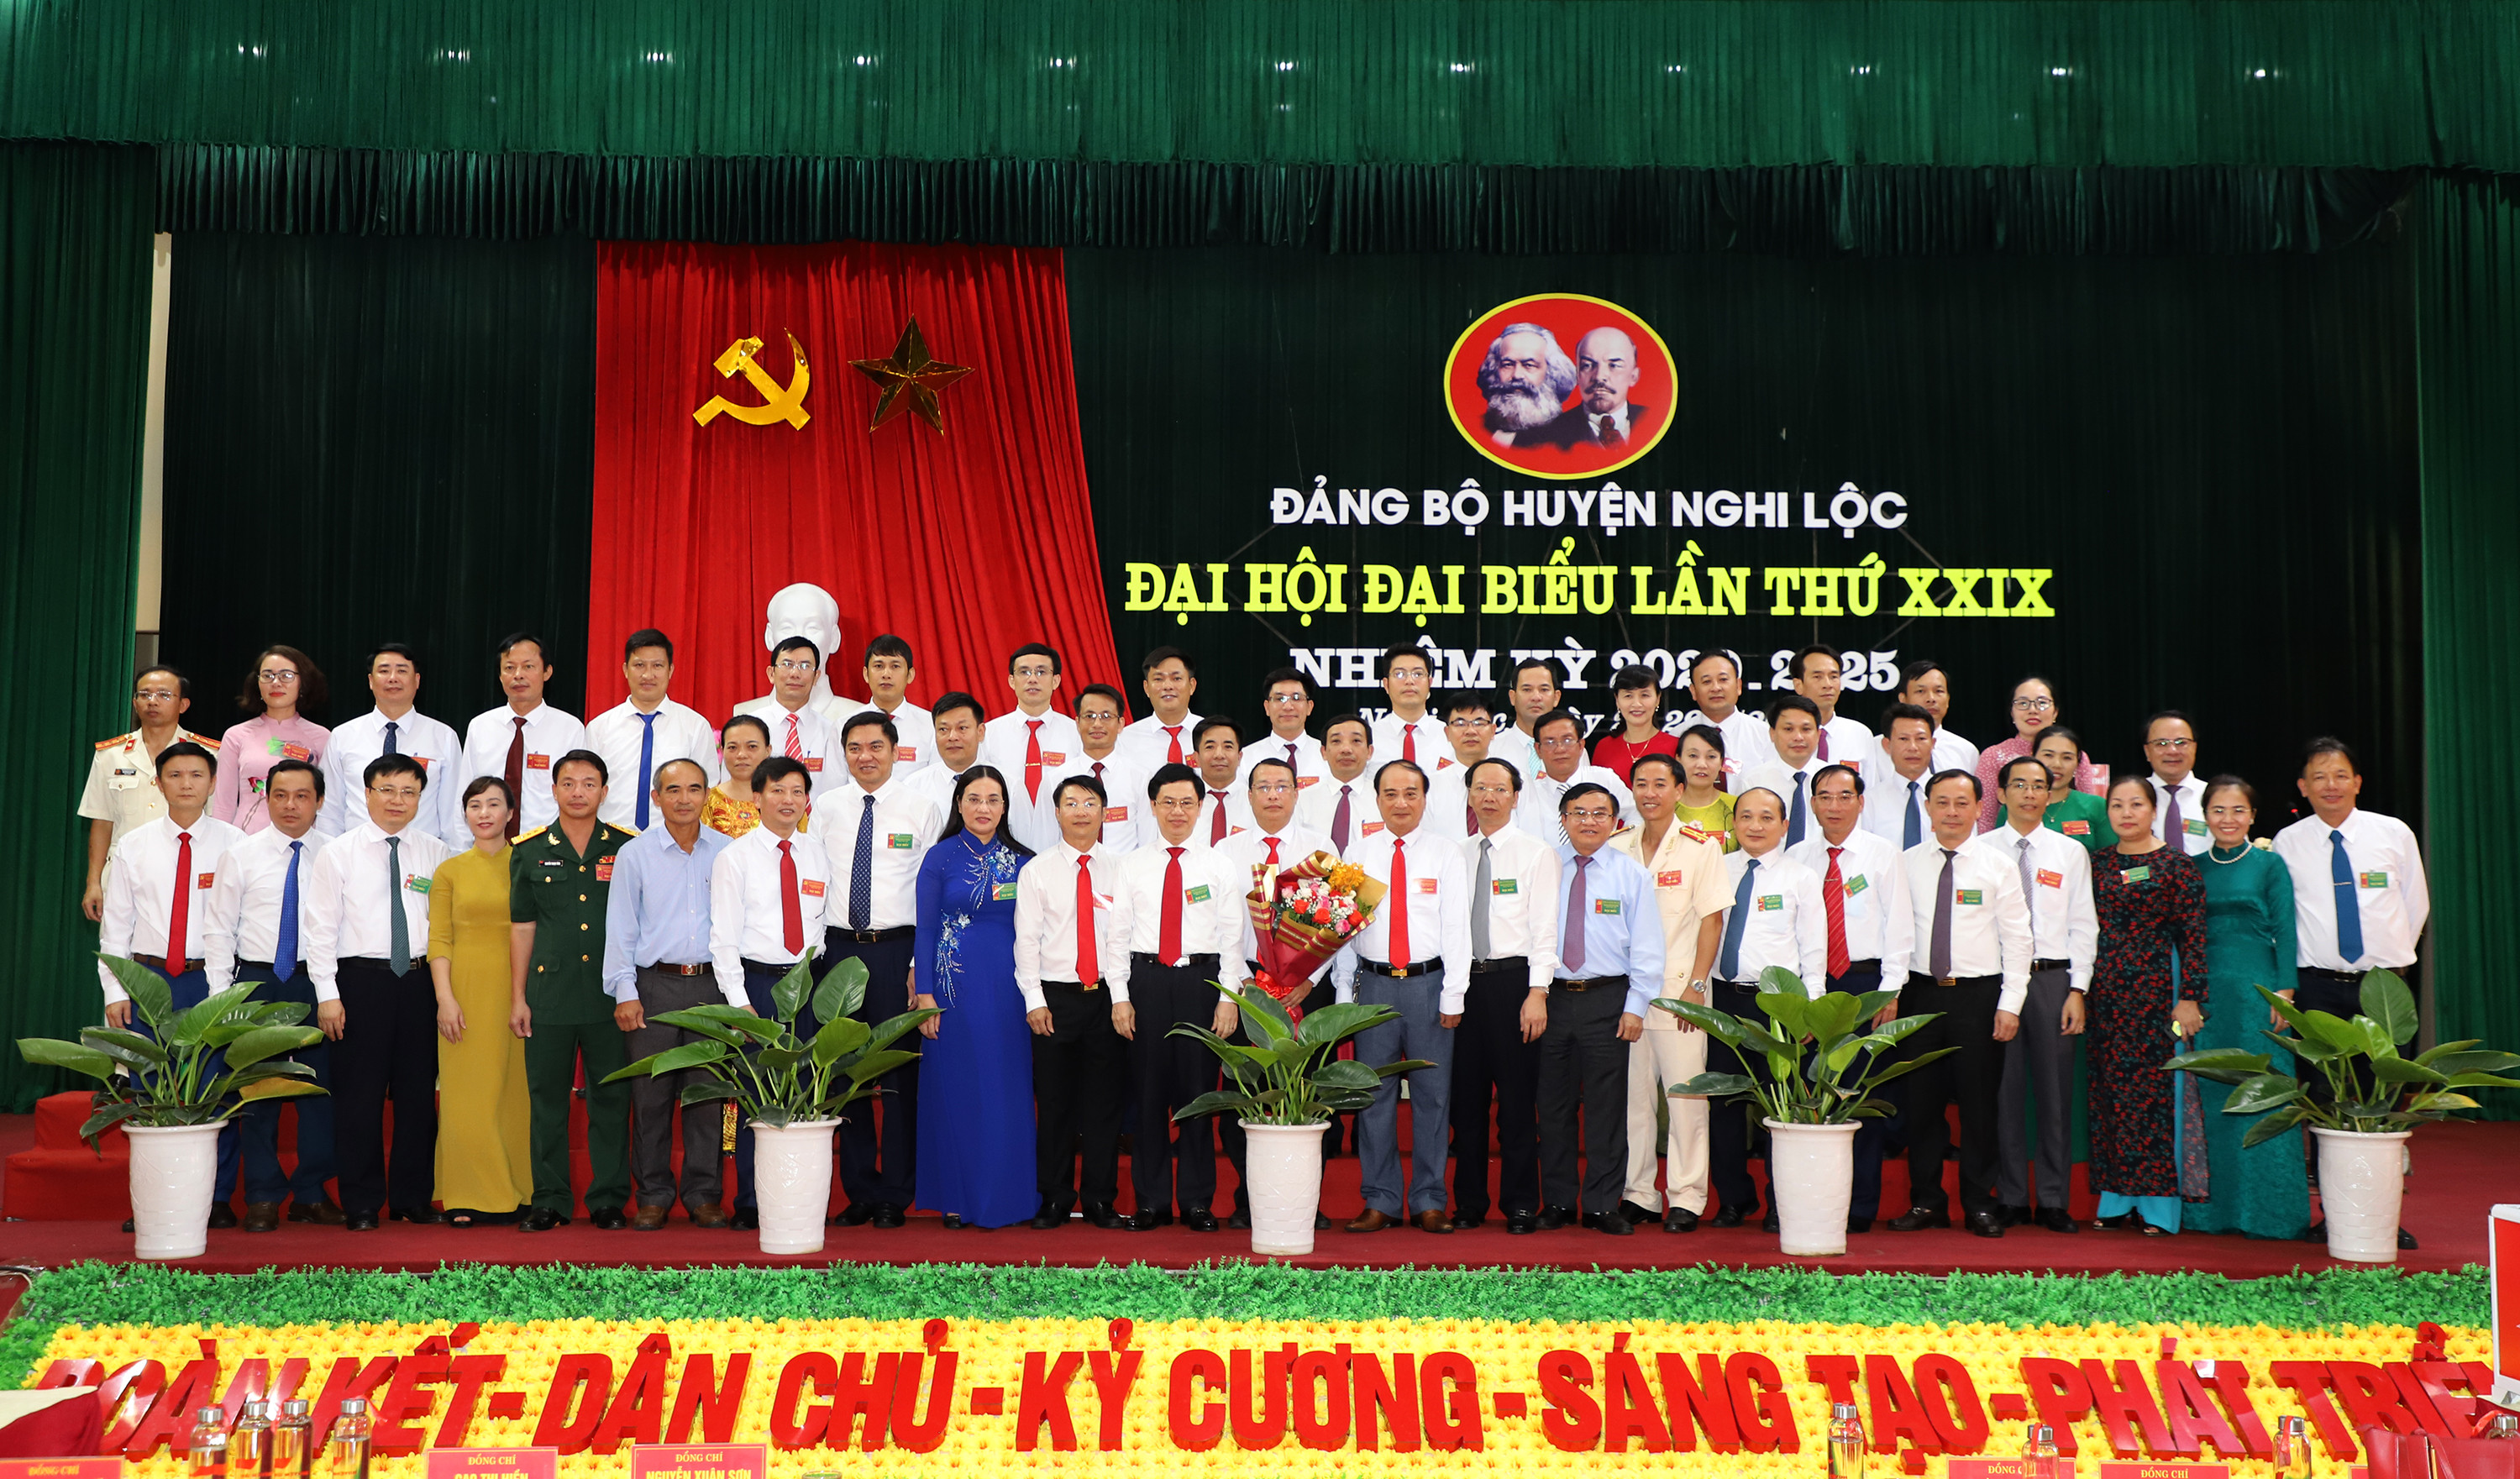 Lãnh đạo tỉnh tặng hóa chúc mừng Ban chấp hành Đảng bộ huyện Nghi Lộc nhiệm kỳ 2020 - 2025. Ảnh:Phạm Bằng